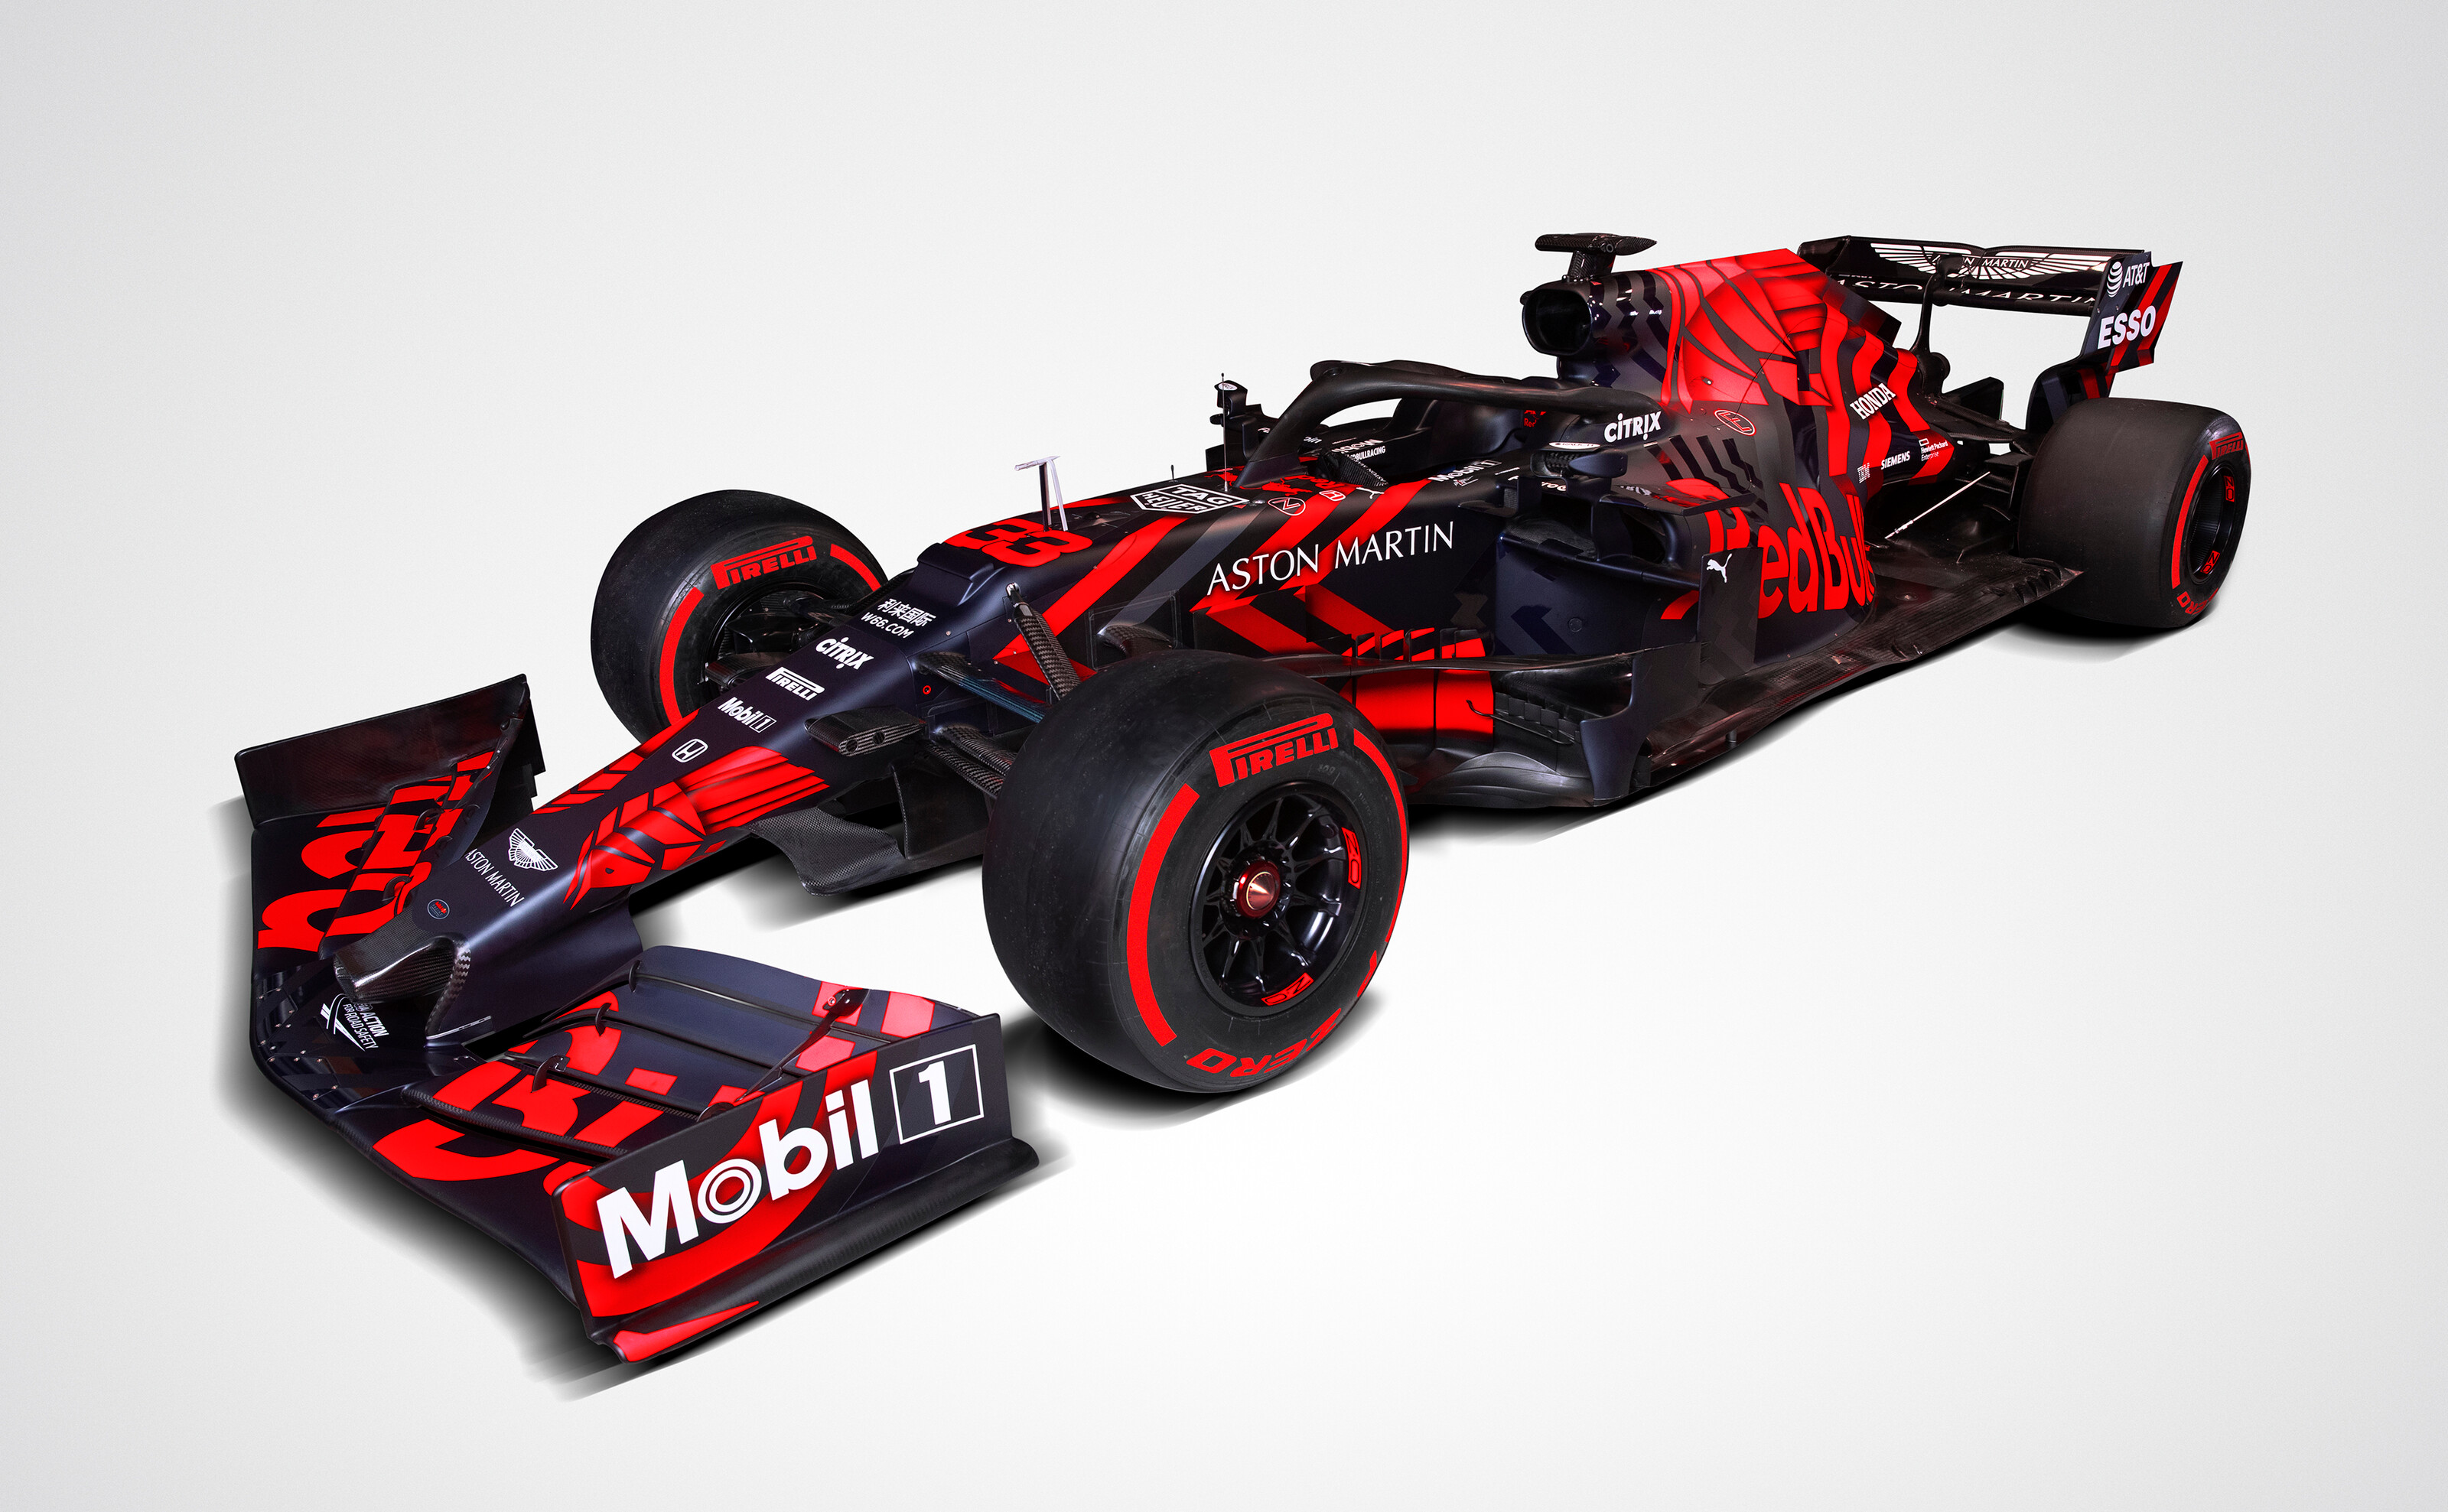 De Red Bull RB15 waarmee het team in 2019 een gooi gaat doen naar het F1-kampioenschap. De rood-zwarte livery was eenmalig voor de presentatie op Silverstone. Foto: Red Bull Content Pool